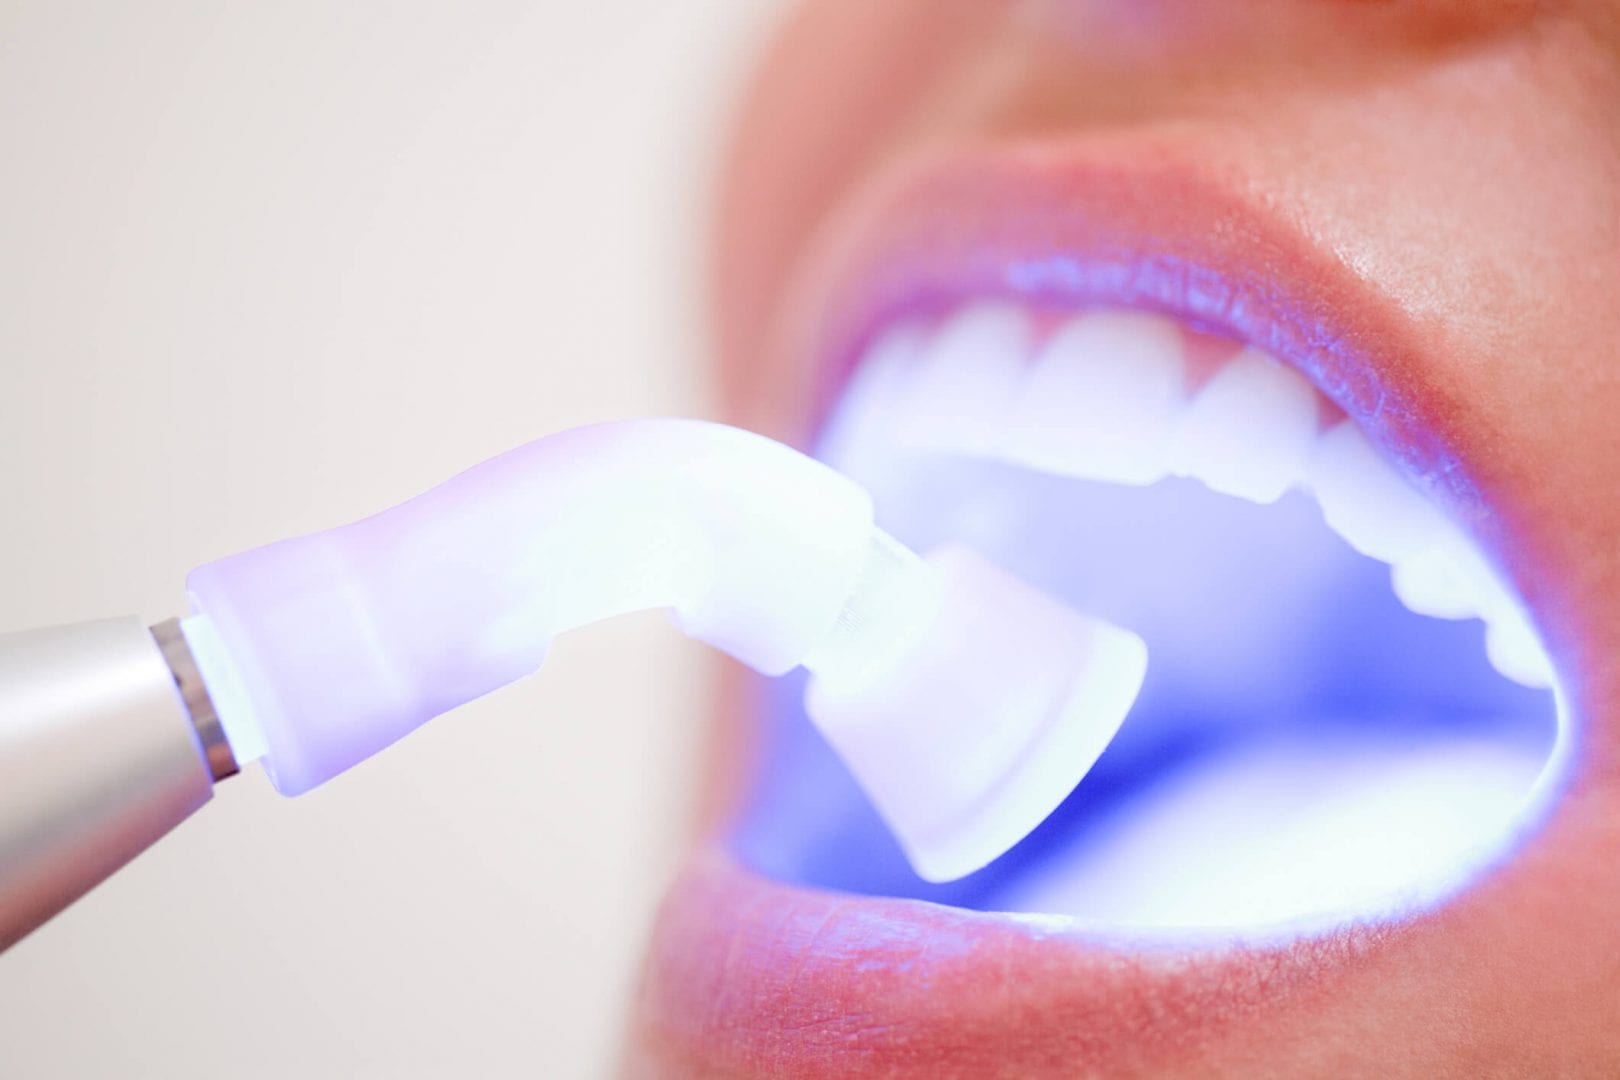 Dentes brancos- principais tratamentos de consultório e também caseiros